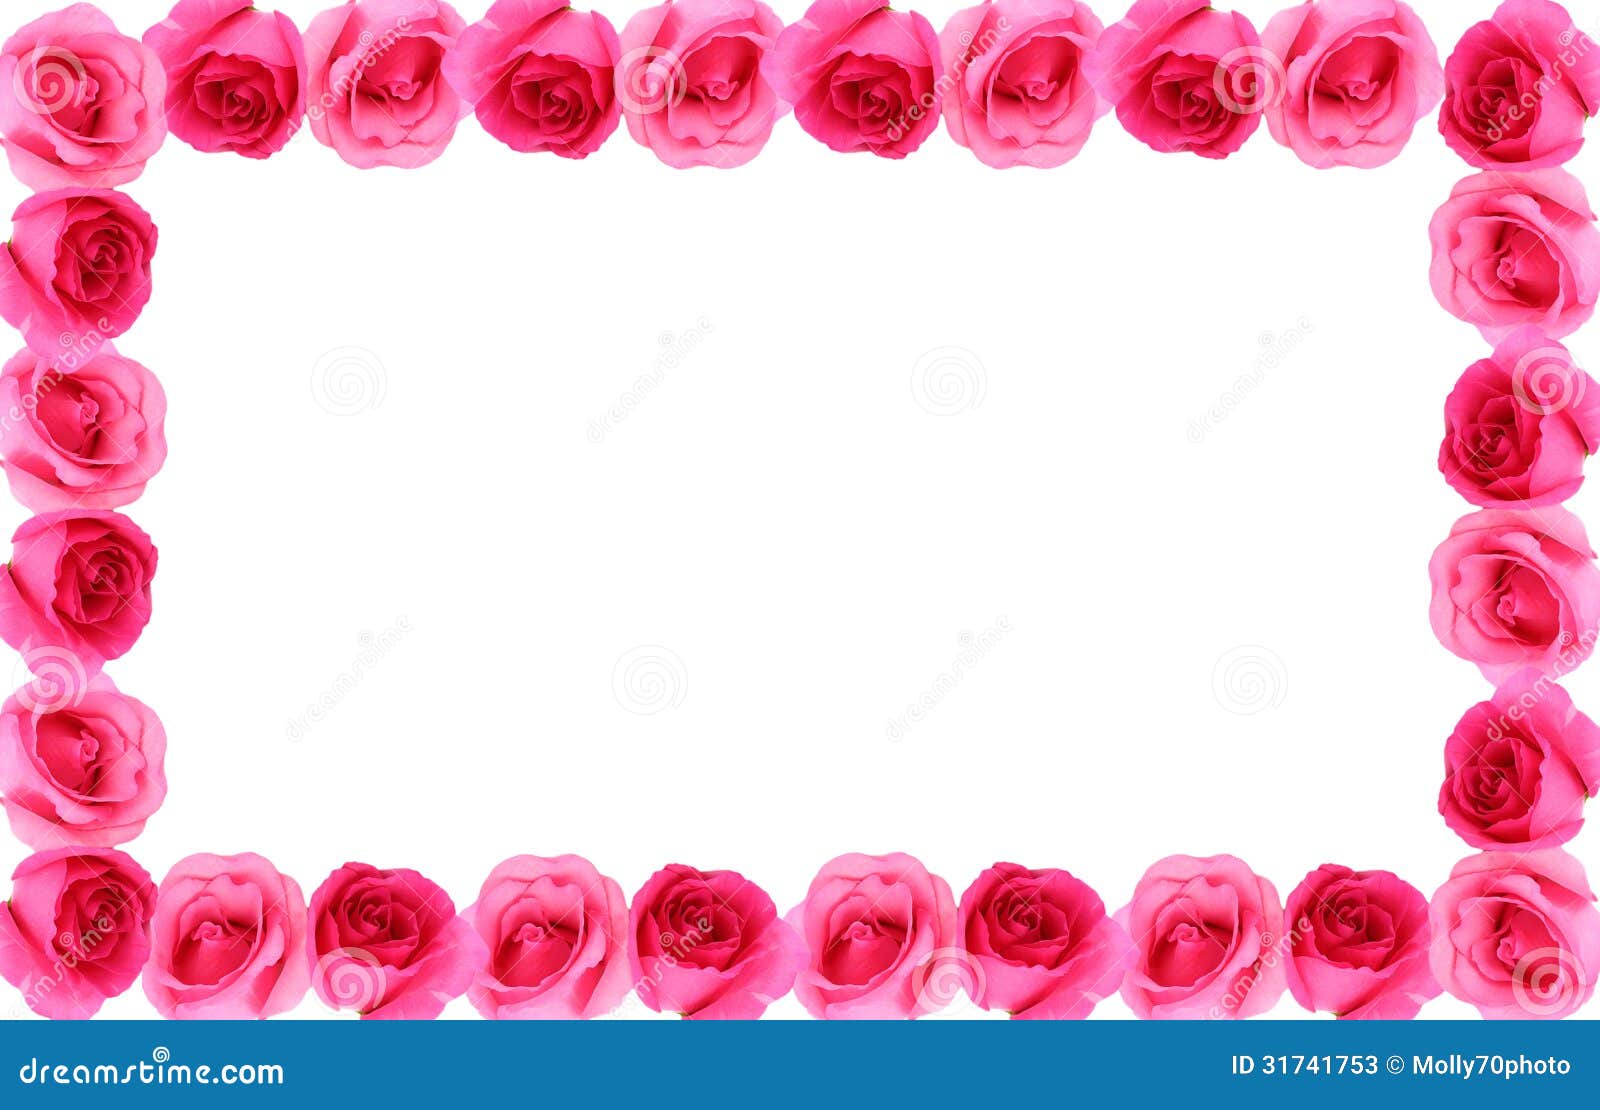 Rose Flower Frame Background Stock Image Image Of Rose Design 31741753